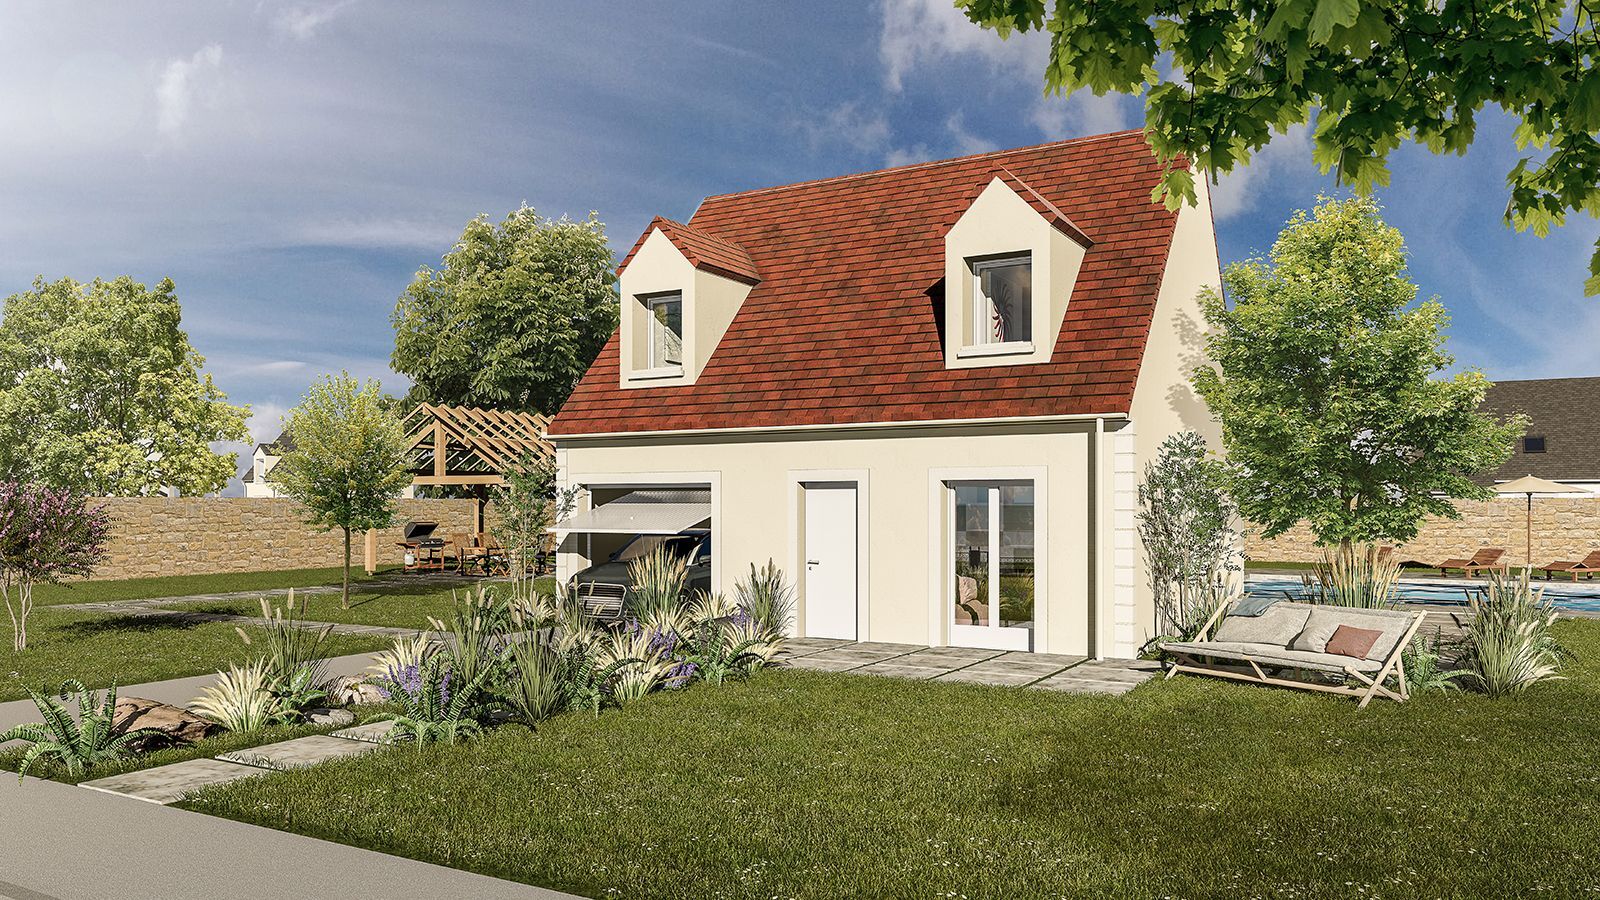 Vente Maison neuve 81 m² à Bailleau-le-Pin 148 994 €